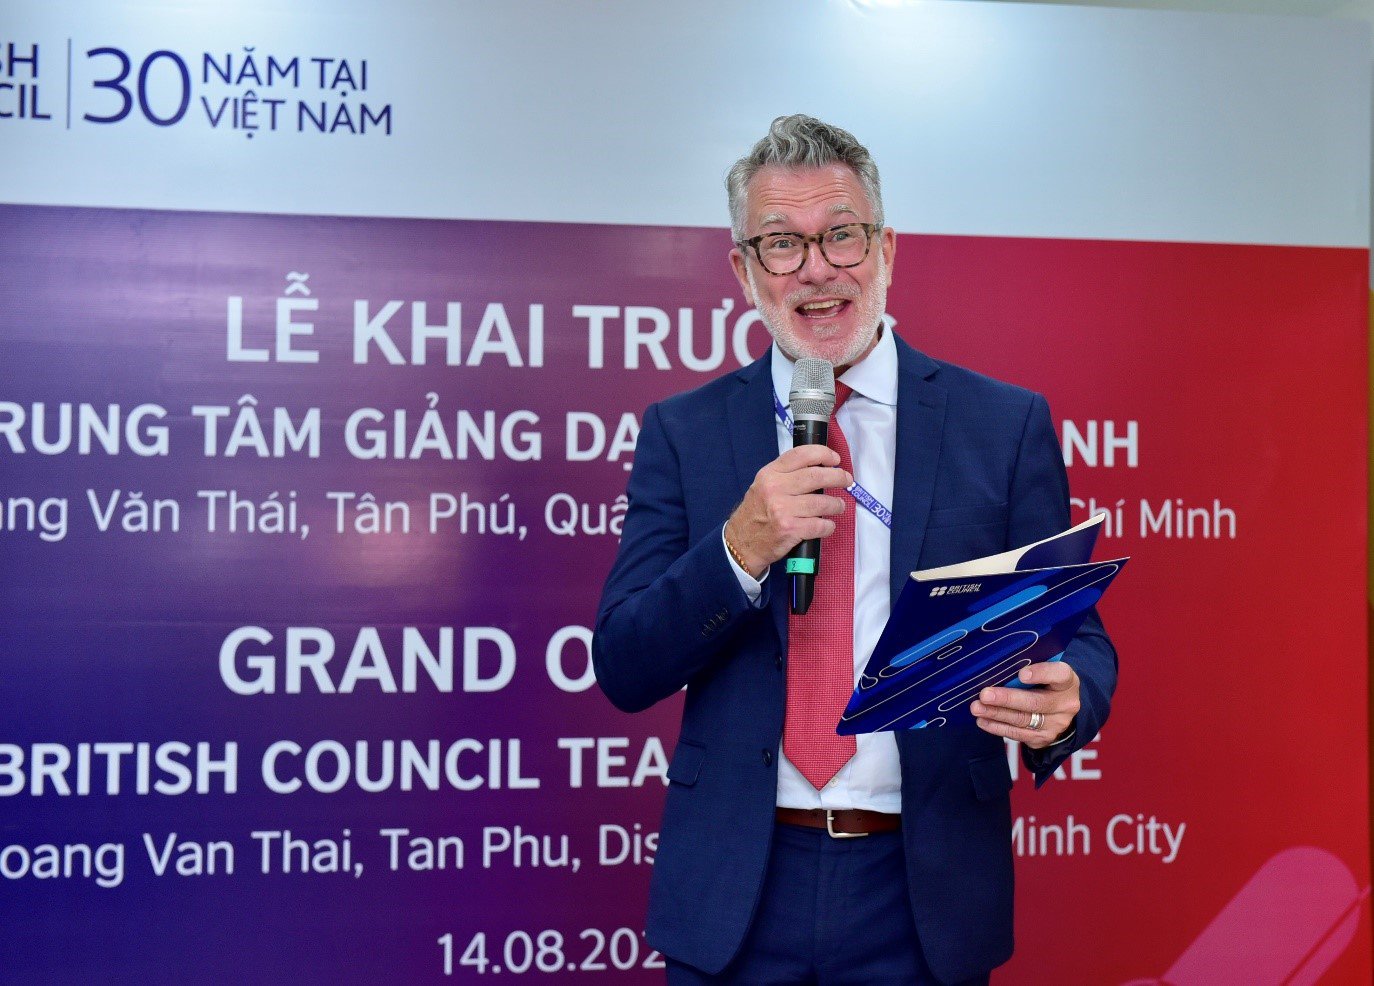 Hội đồng Anh khai trương hai trung tâm giảng dạy tiếng Anh tại TP. Hồ Chí Minh - 1